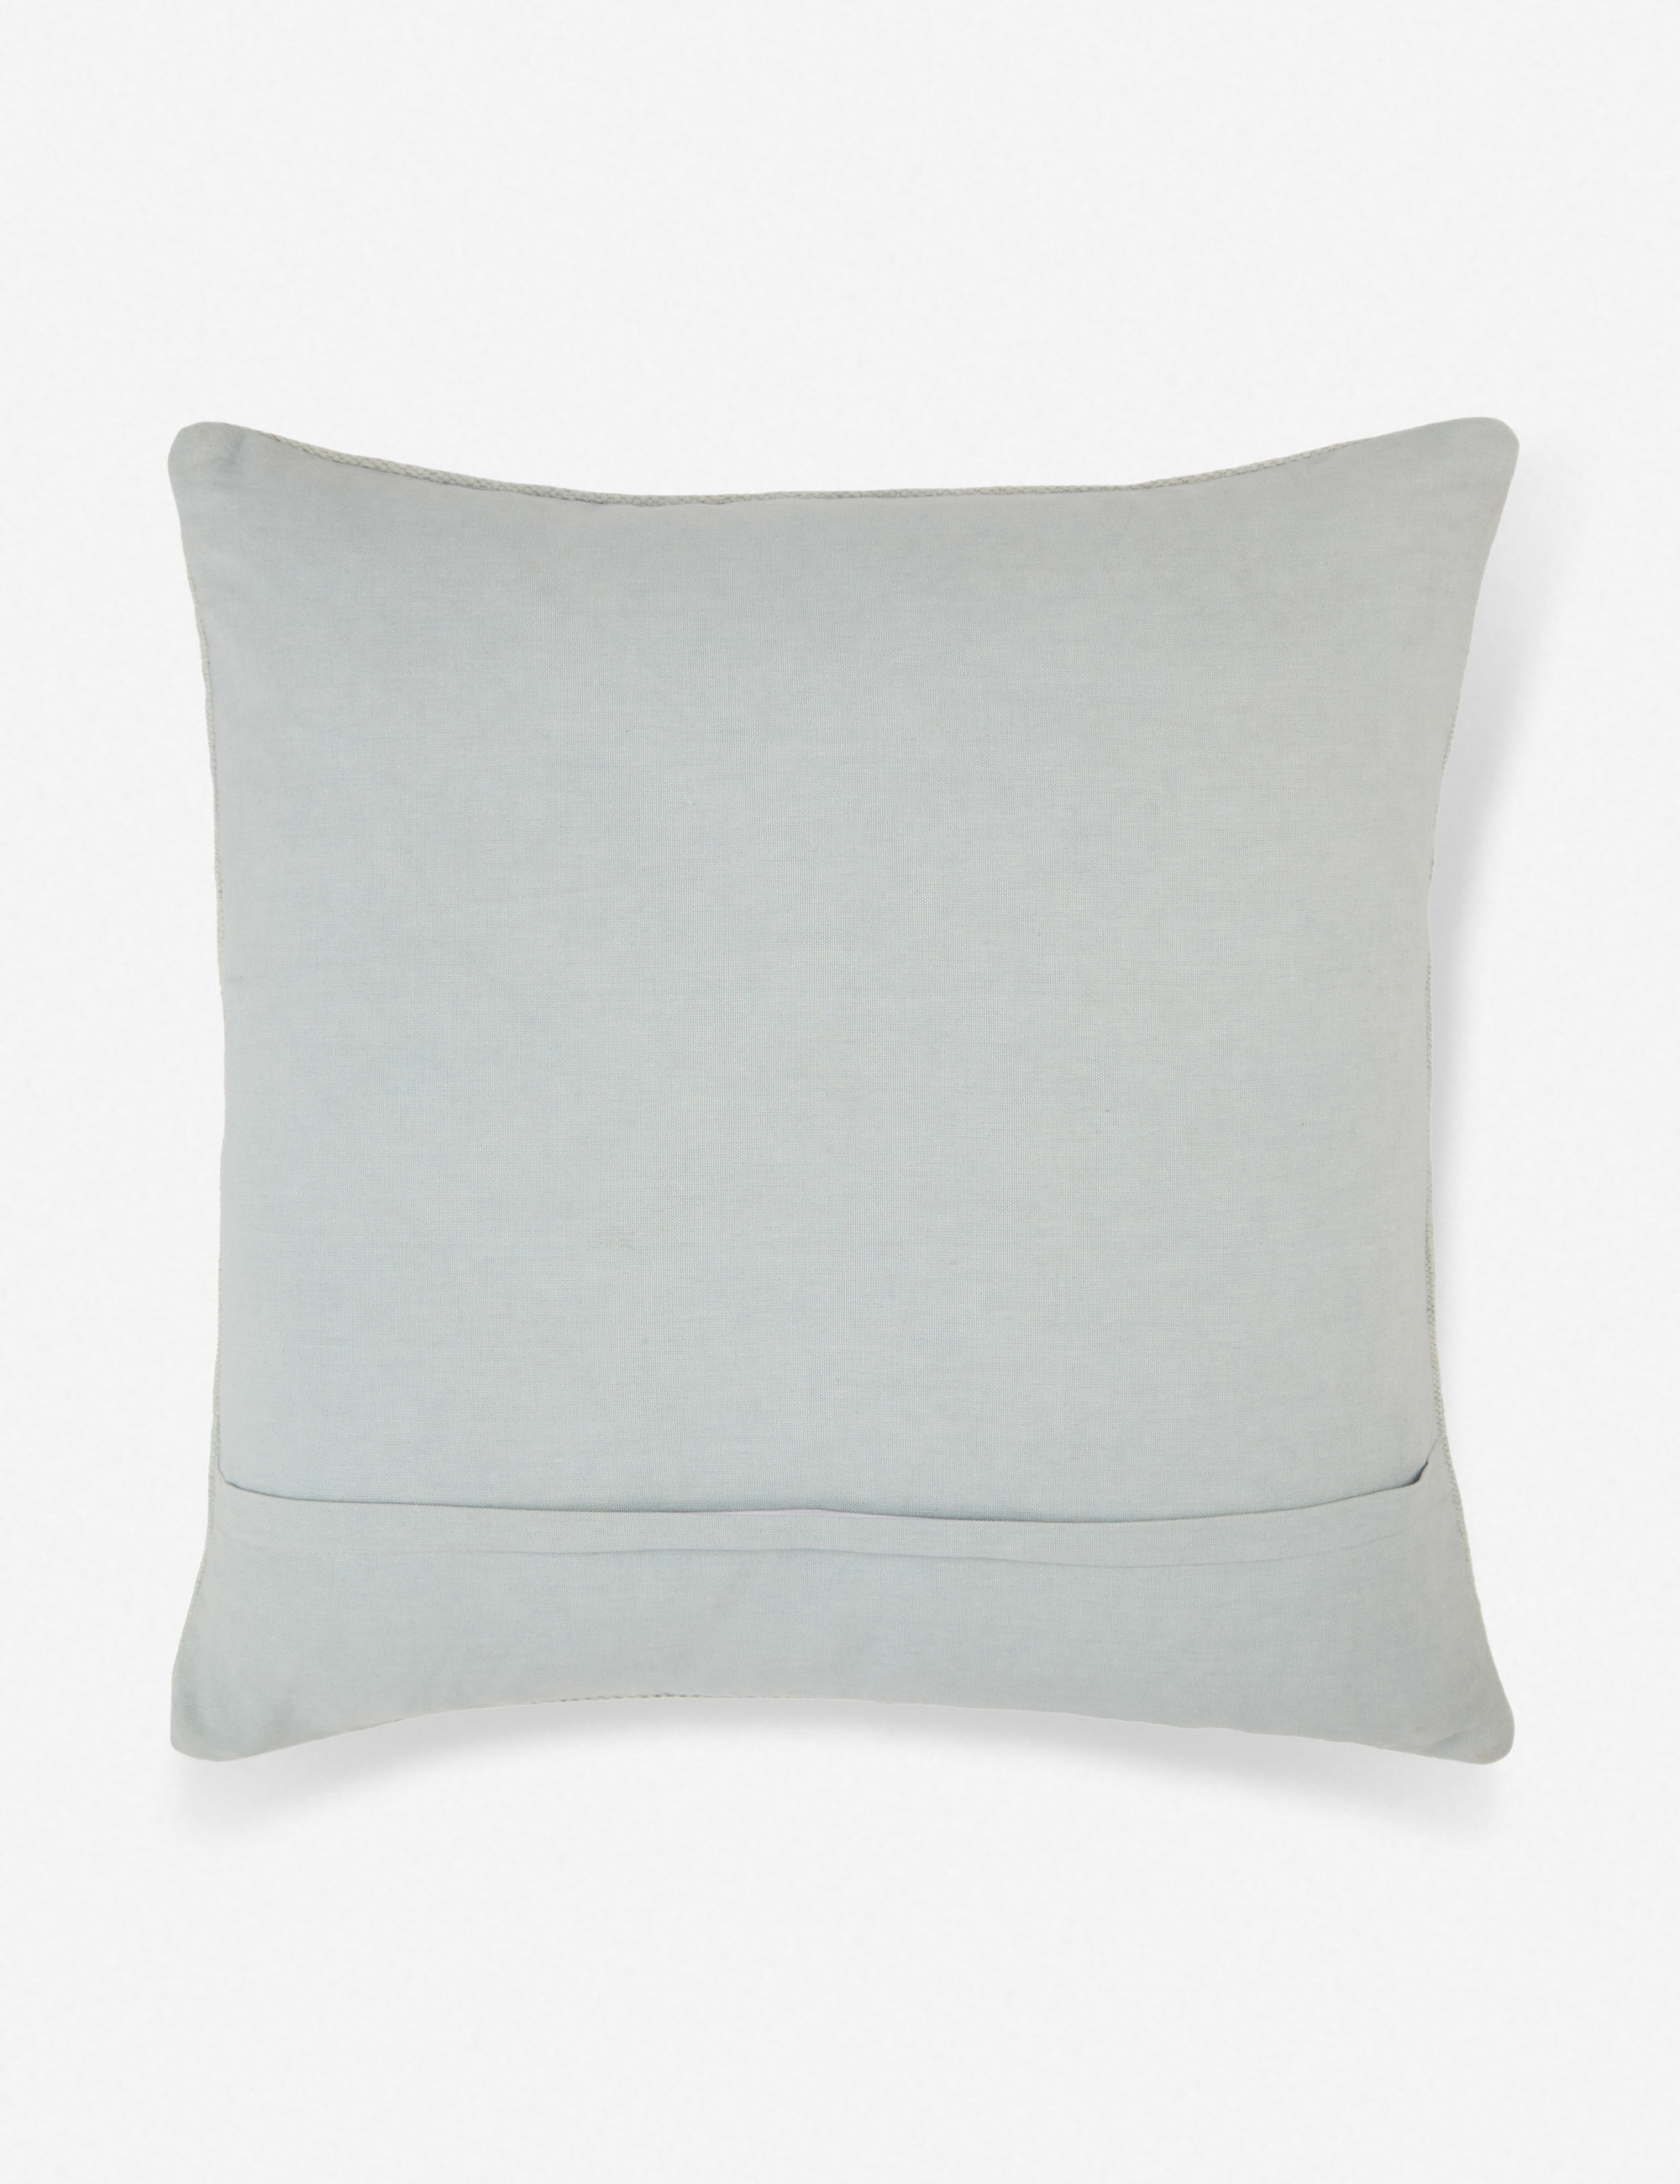 Ciecil Pillow - Image 1